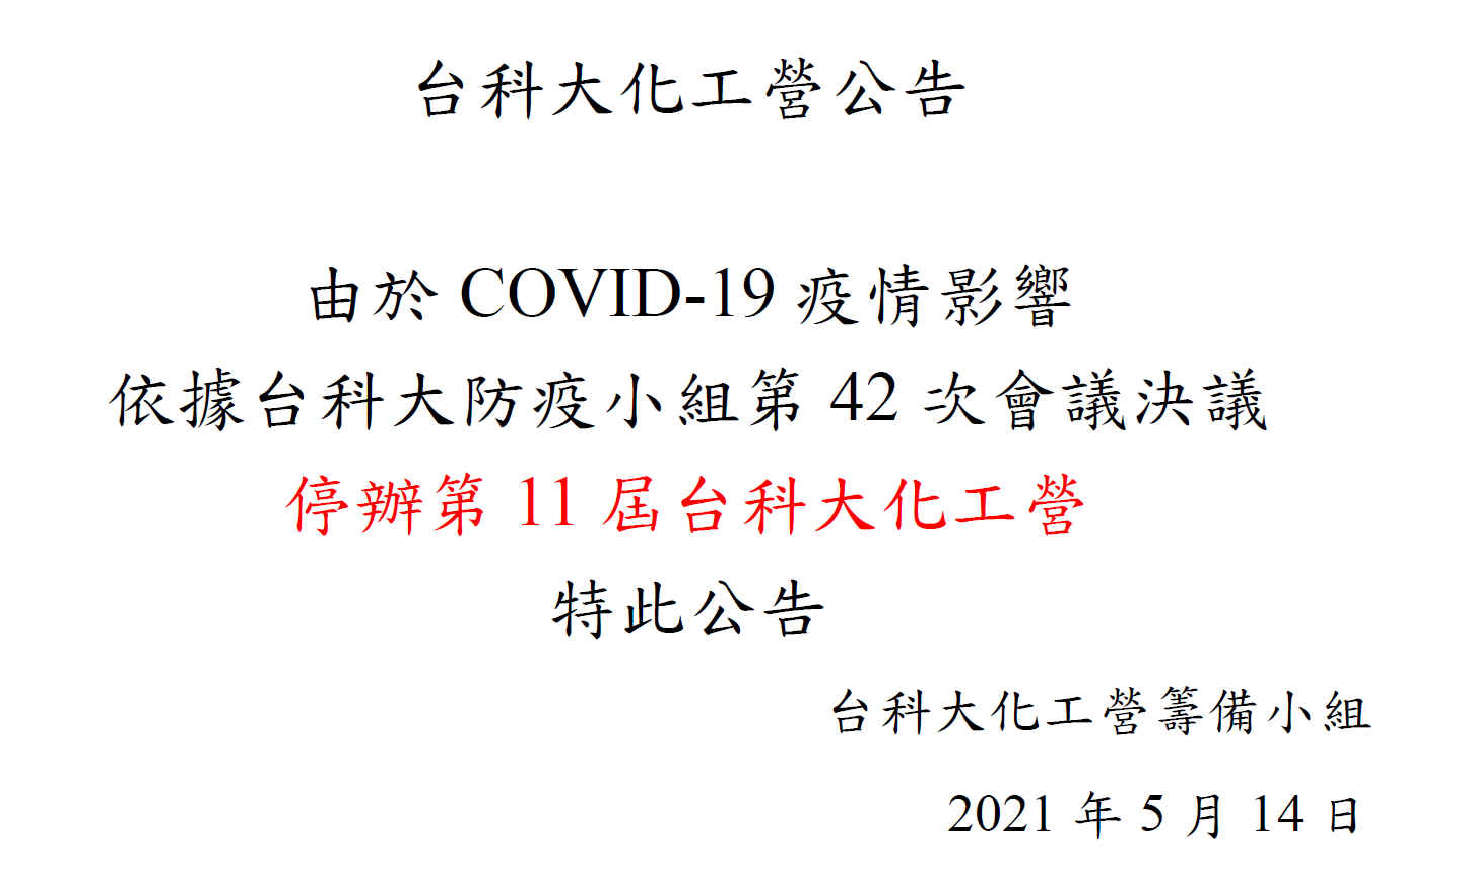 台科大化工營公告 由於COVID-19 疫情影響 依據台科大防疫小組第42 次會議決議 停辦第11 屆台科大化工營 特此公告 台科大化工營籌備小組 2021 年5 月14 日